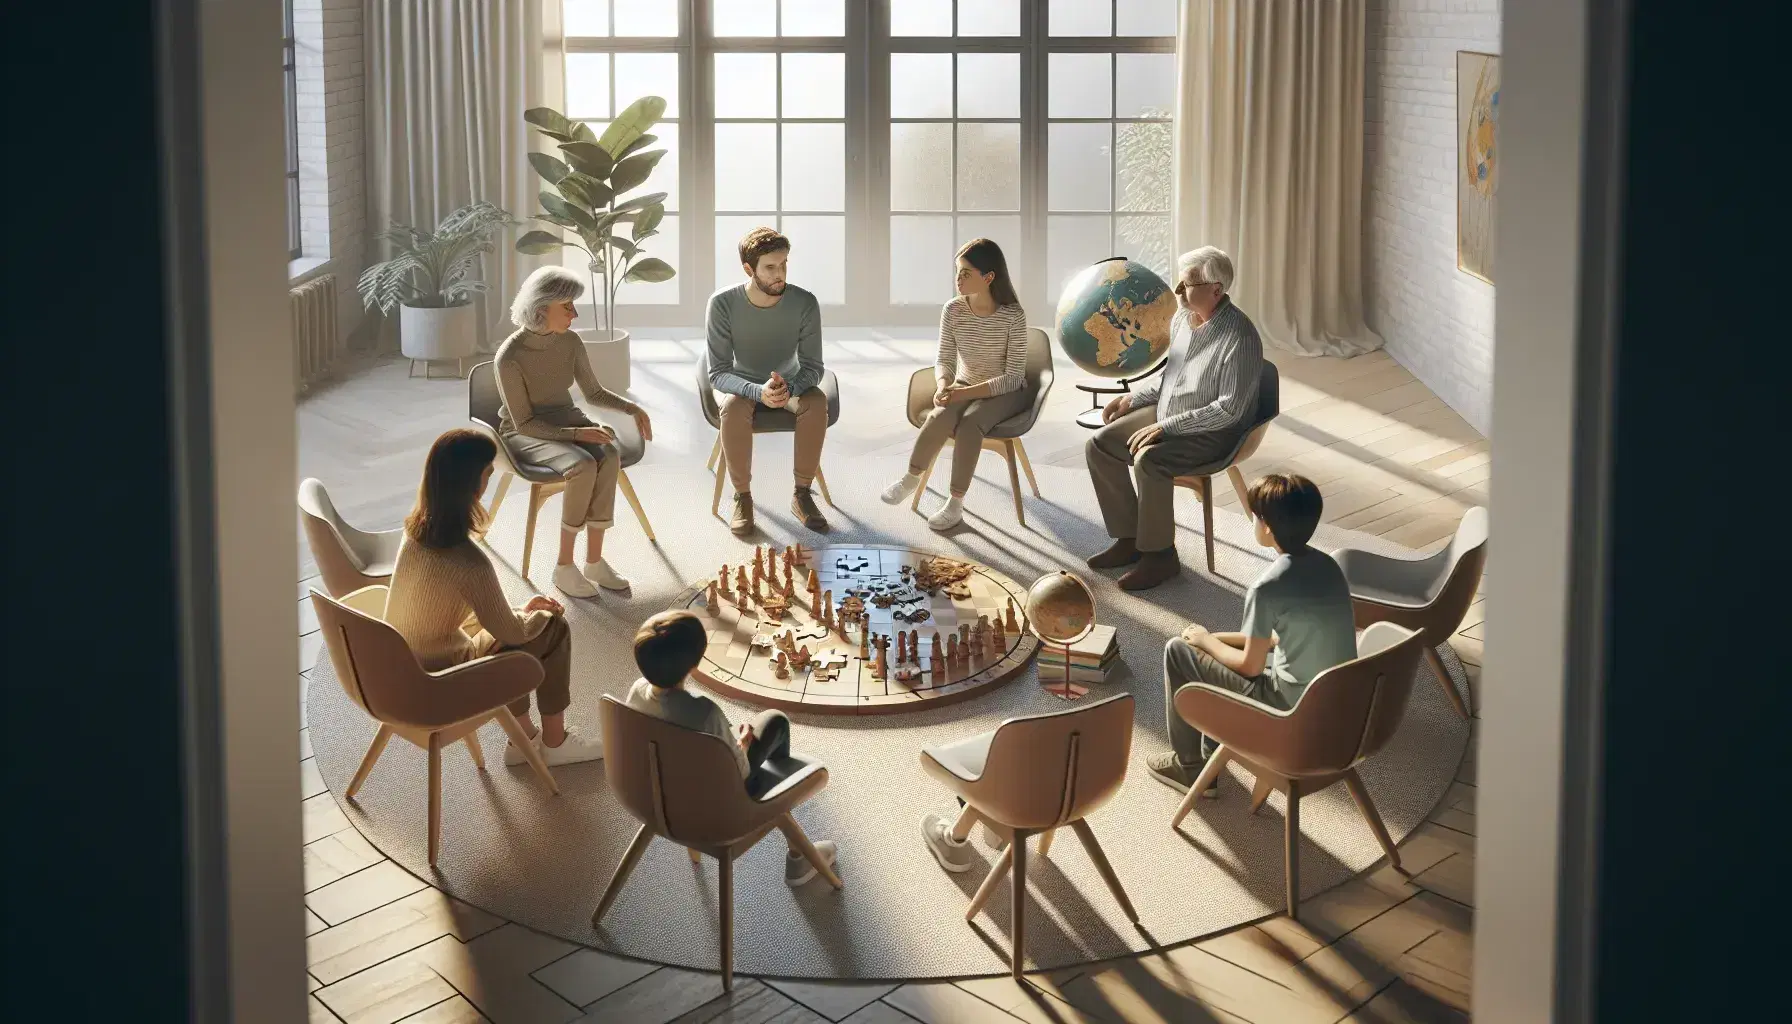 Gruppo di cinque persone sedute in cerchio discute attorno a puzzle, scacchiera e mappamondo in ambiente luminoso e accogliente.